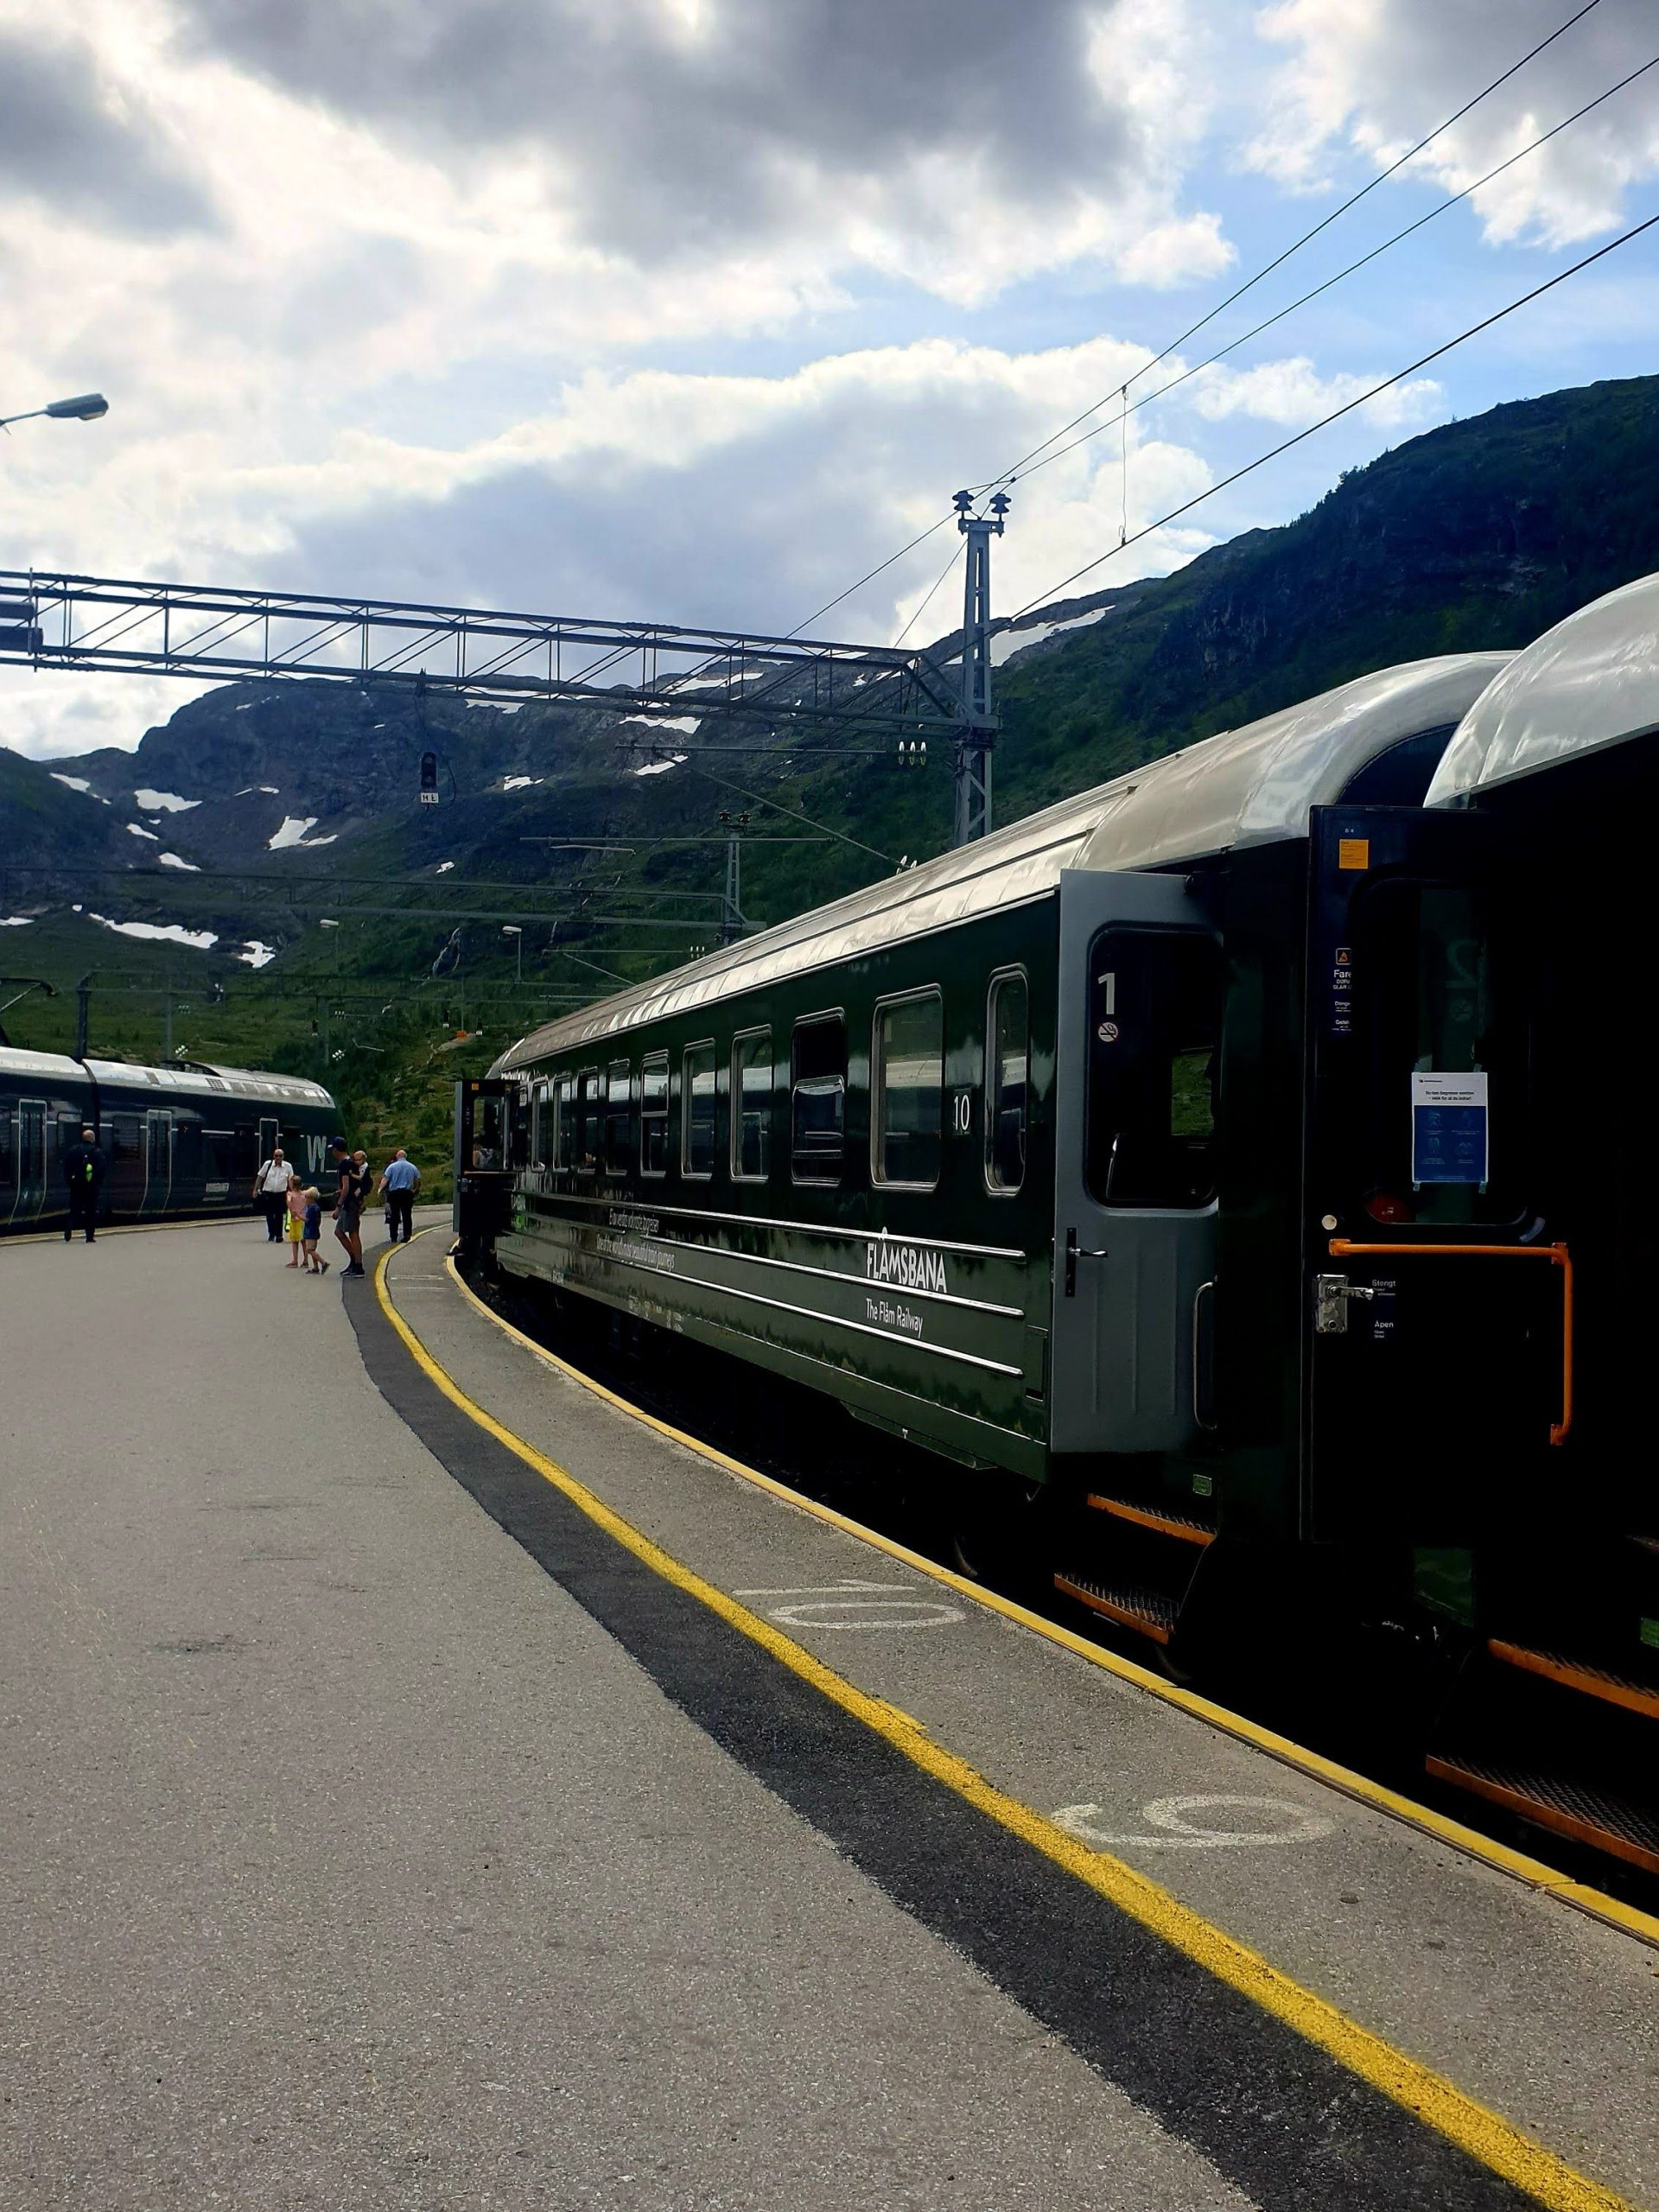 Norvegia dei fiordi: la linea ferroviaria a Flåm